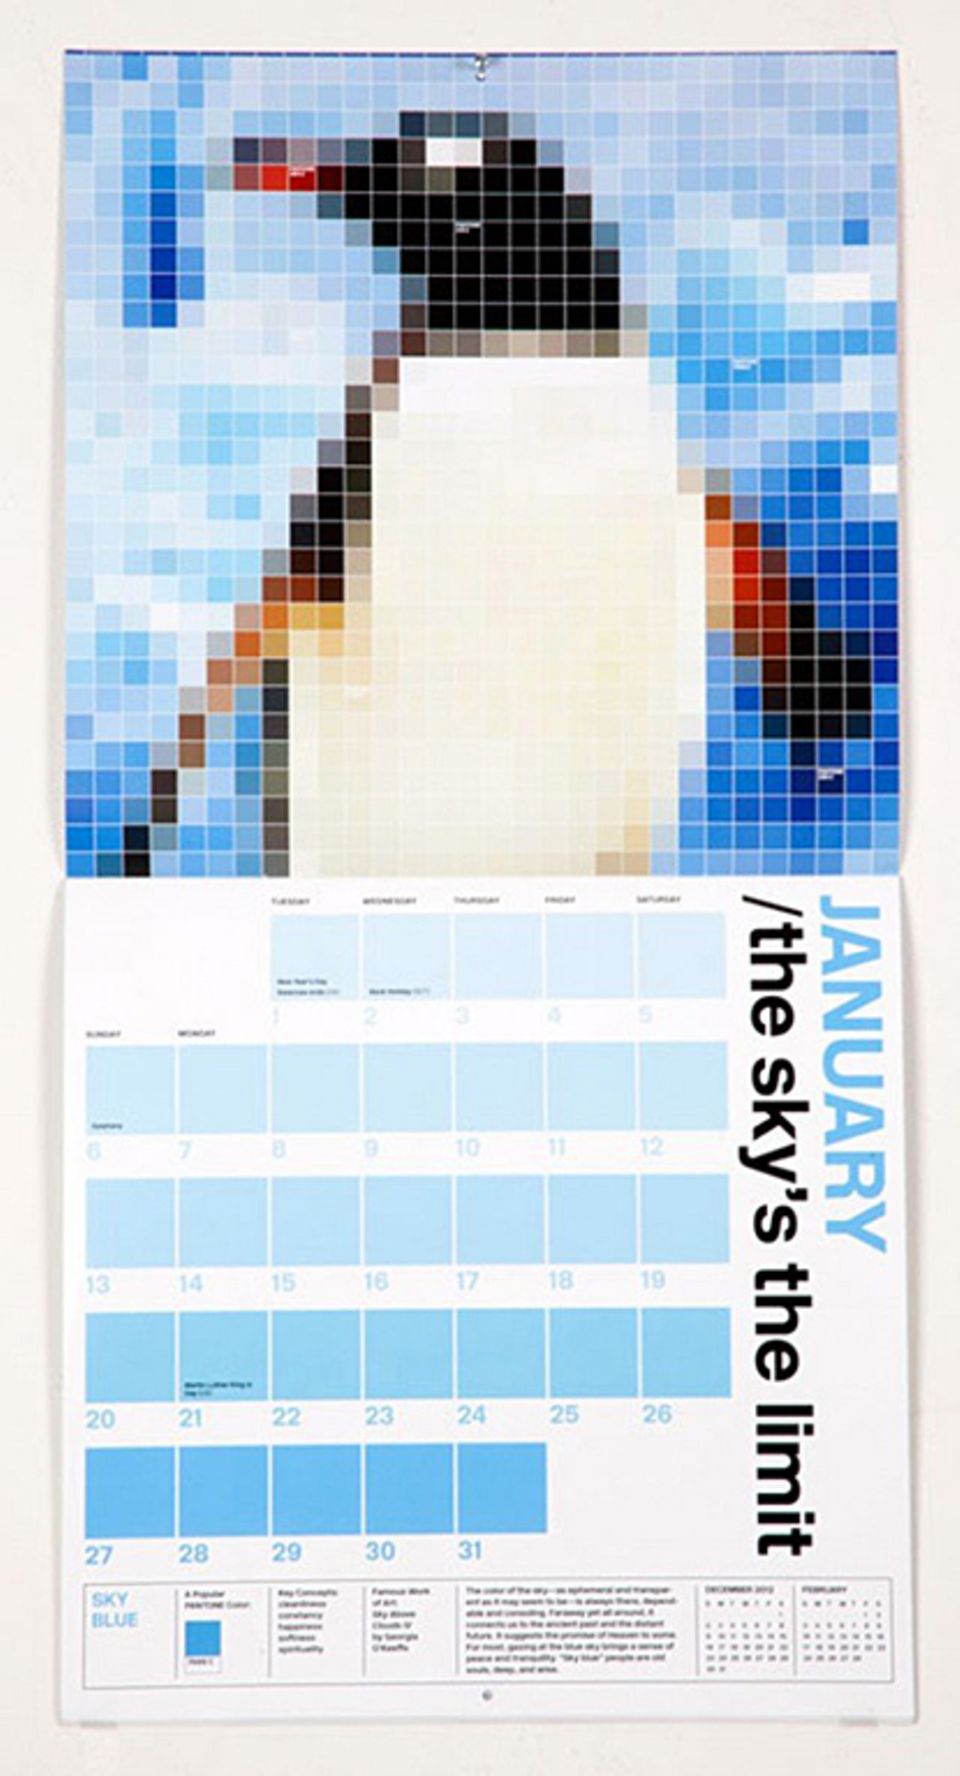 Wandkalender im Pixel-Look bei Pentagram